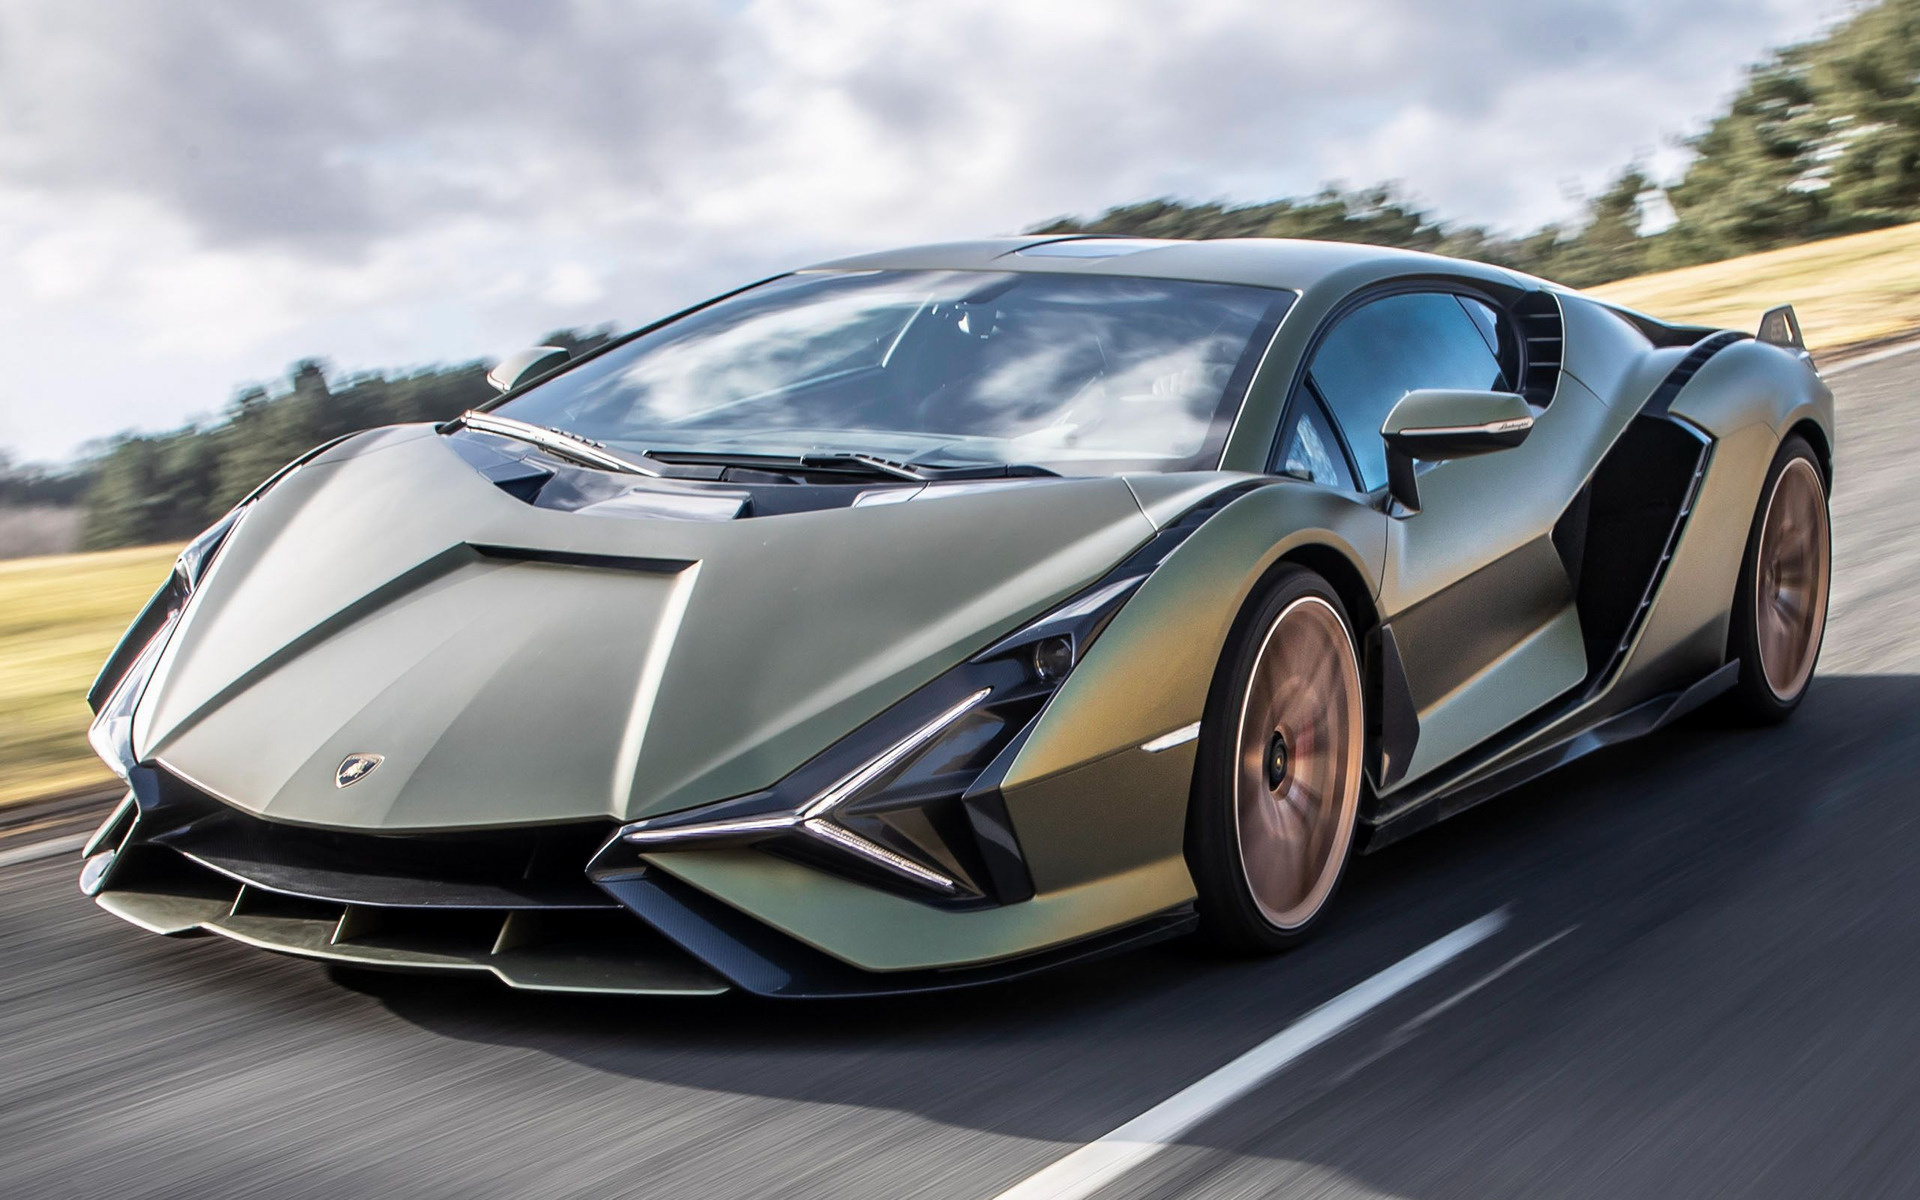 2020 Lamborghini Sian FKP 37 - Wallpapers and HD Images | Car Pixel